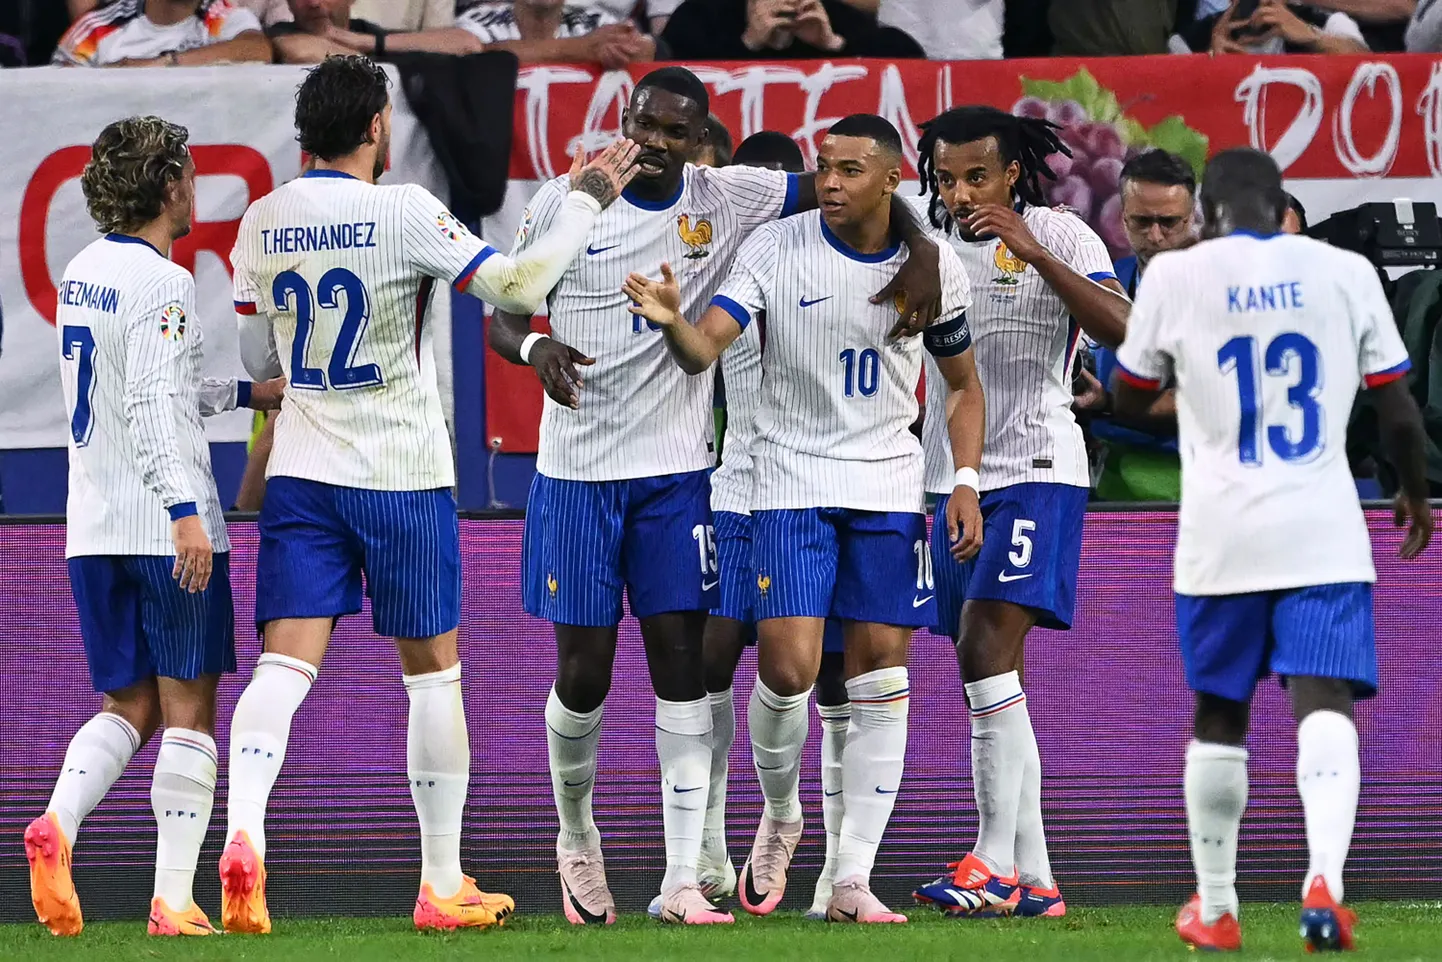 Prantsusmaa mängijad tähistavad skoori avamist mängus Austriaga.